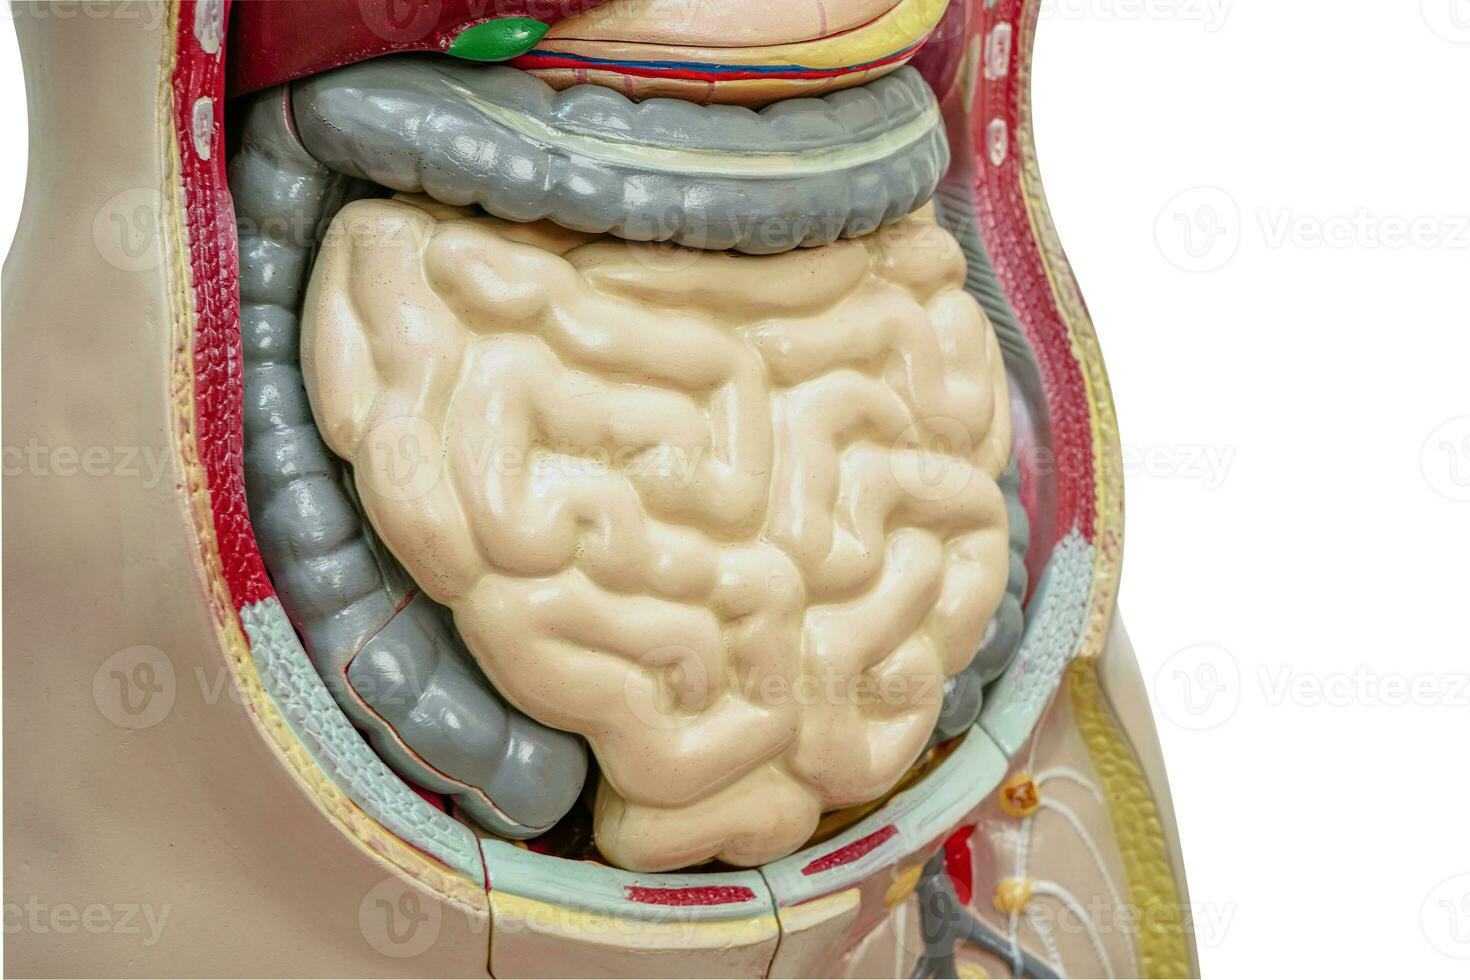 intestin ou intestin Humain anatomie modèle pour étude éducation médical cours. photo